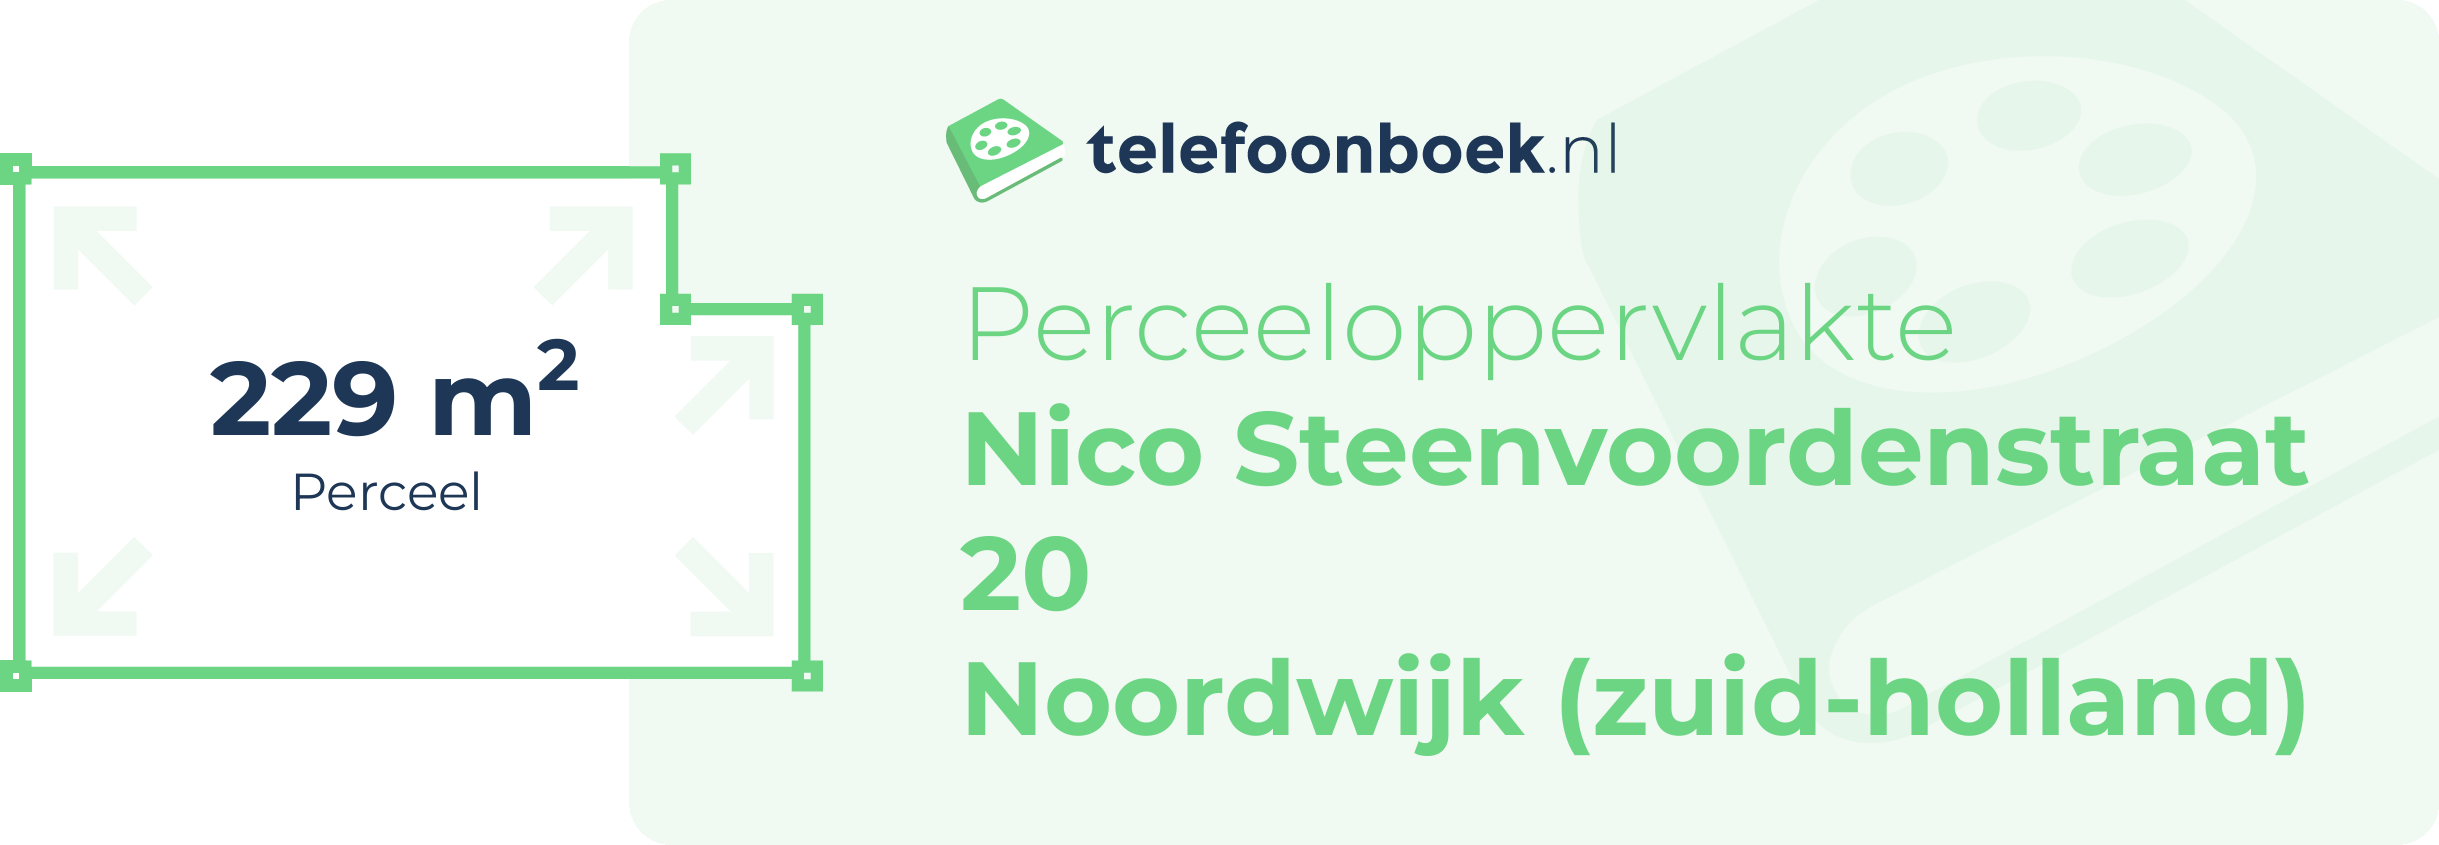 Perceeloppervlakte Nico Steenvoordenstraat 20 Noordwijk (Zuid-Holland)